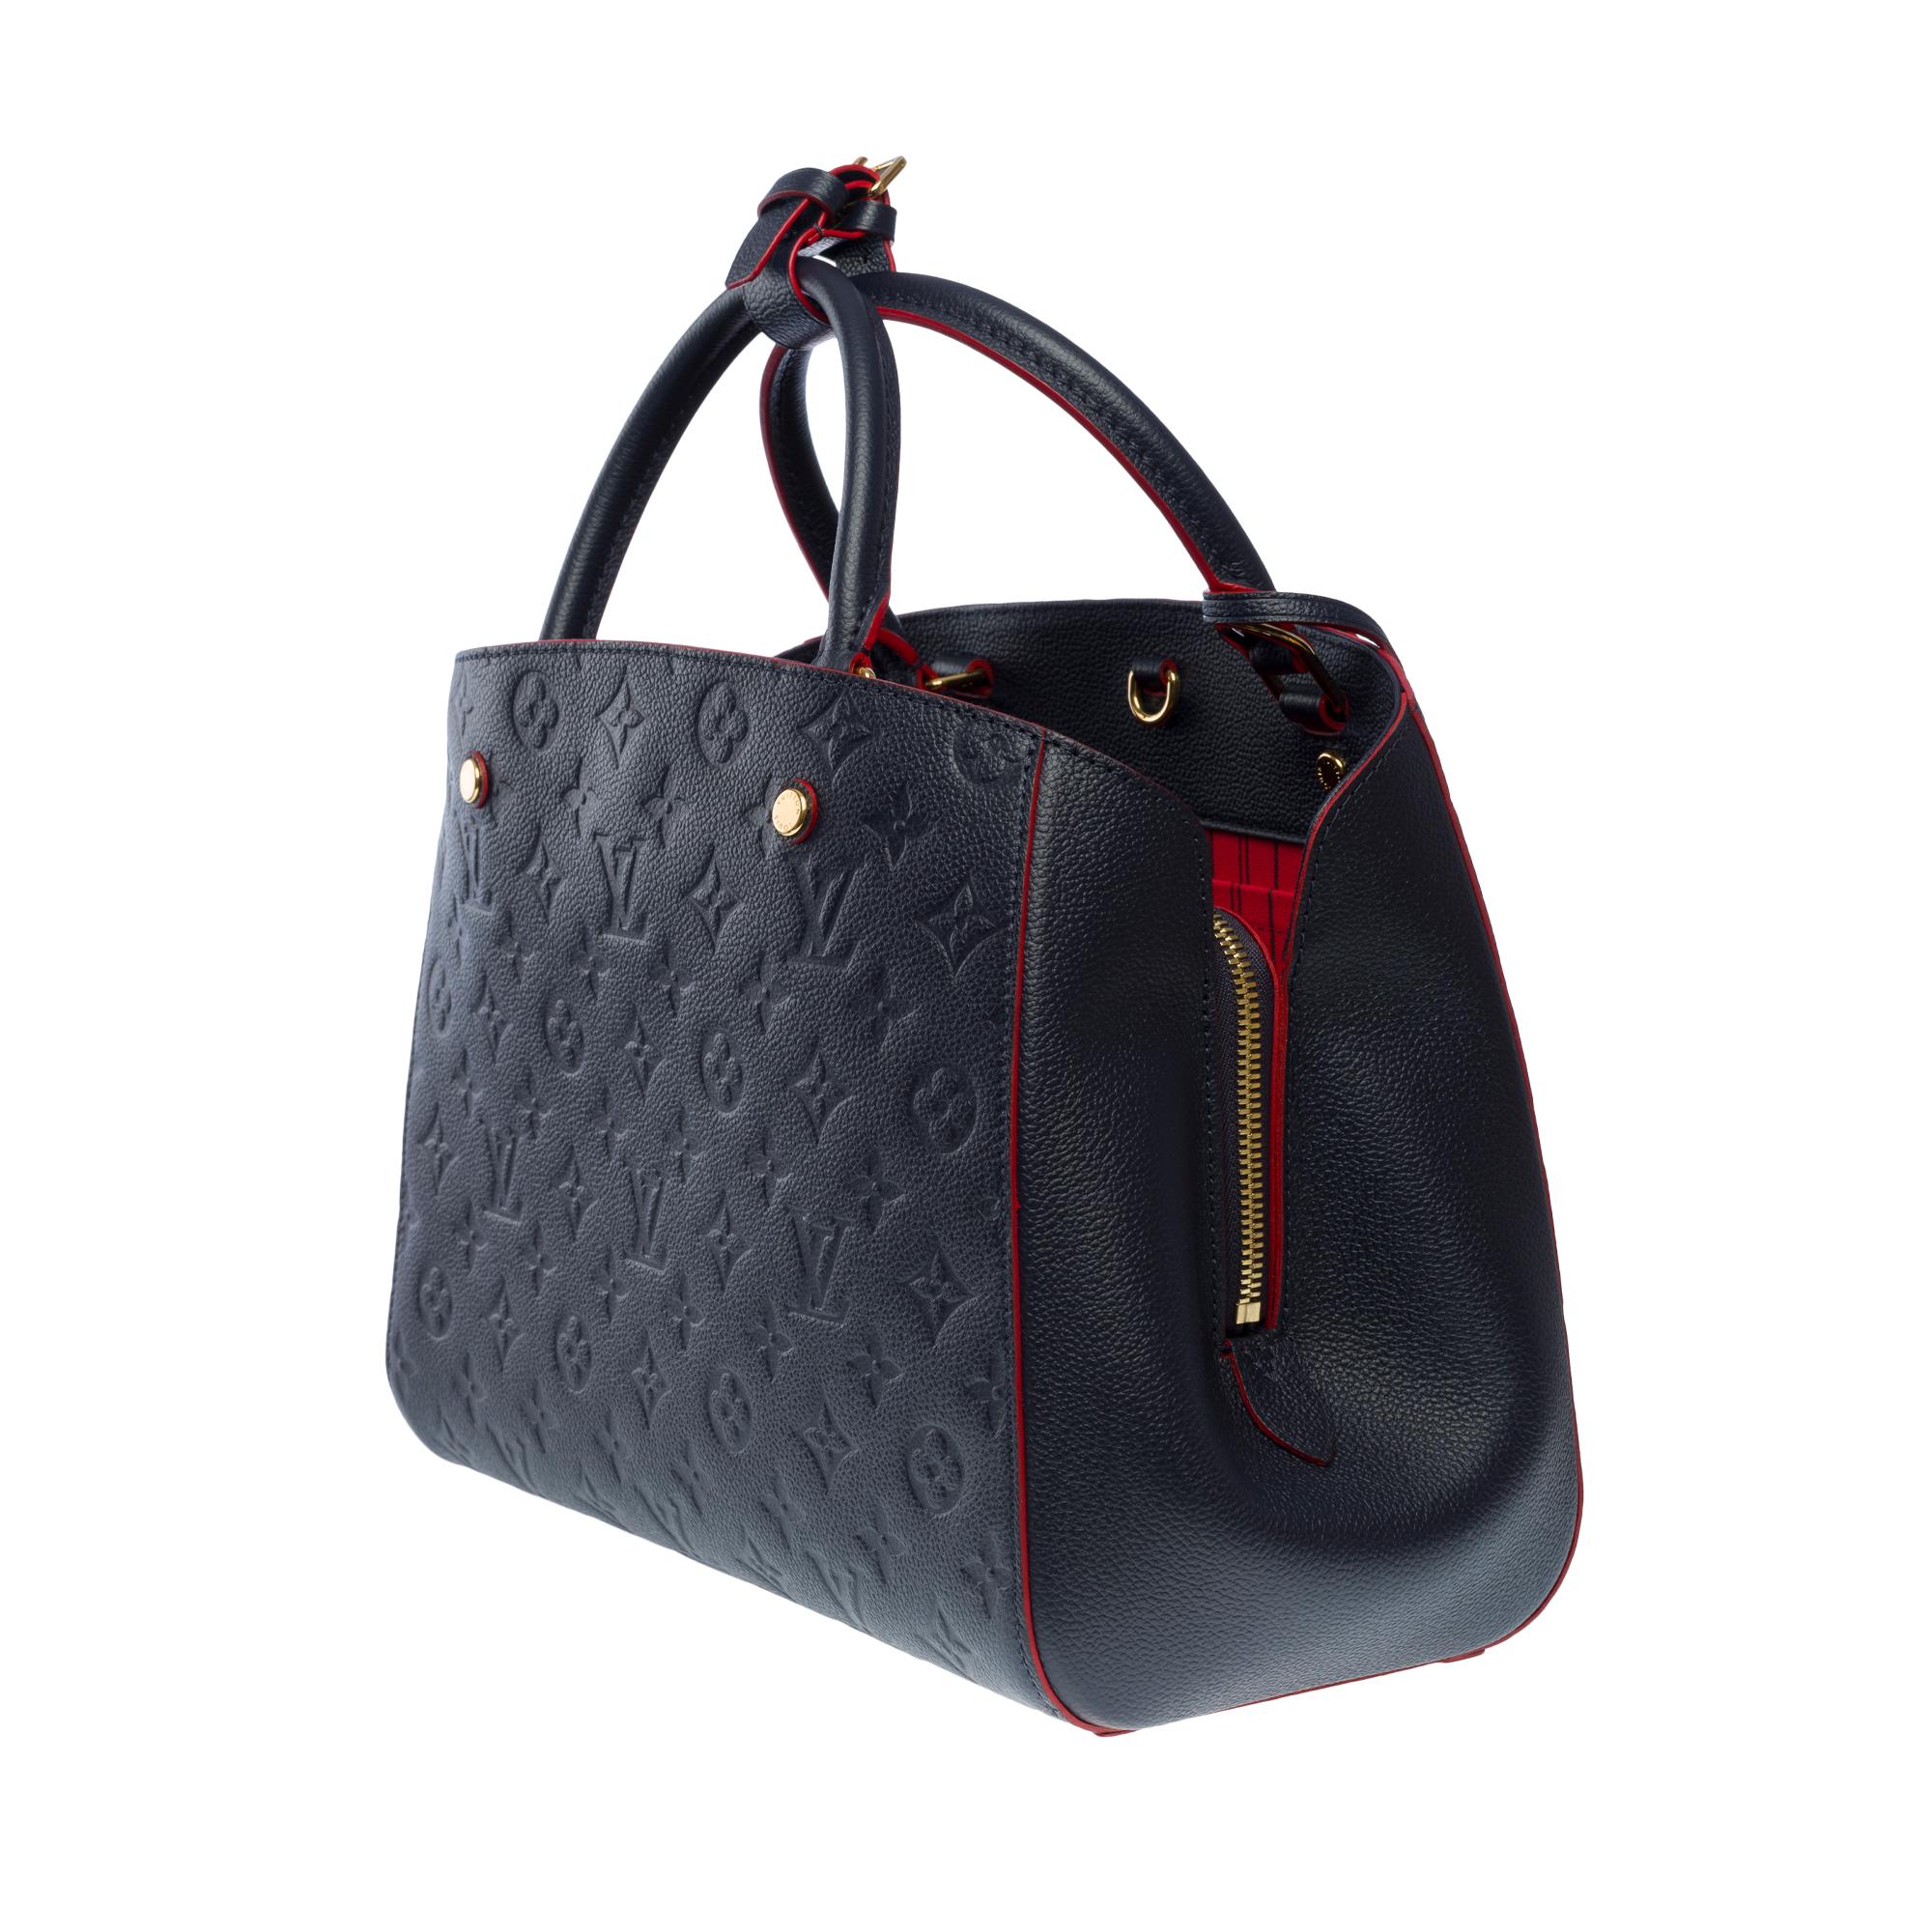 Women's Louis Vuitton Montaigne MM handbag strap in blue/red monogram leather , GHW